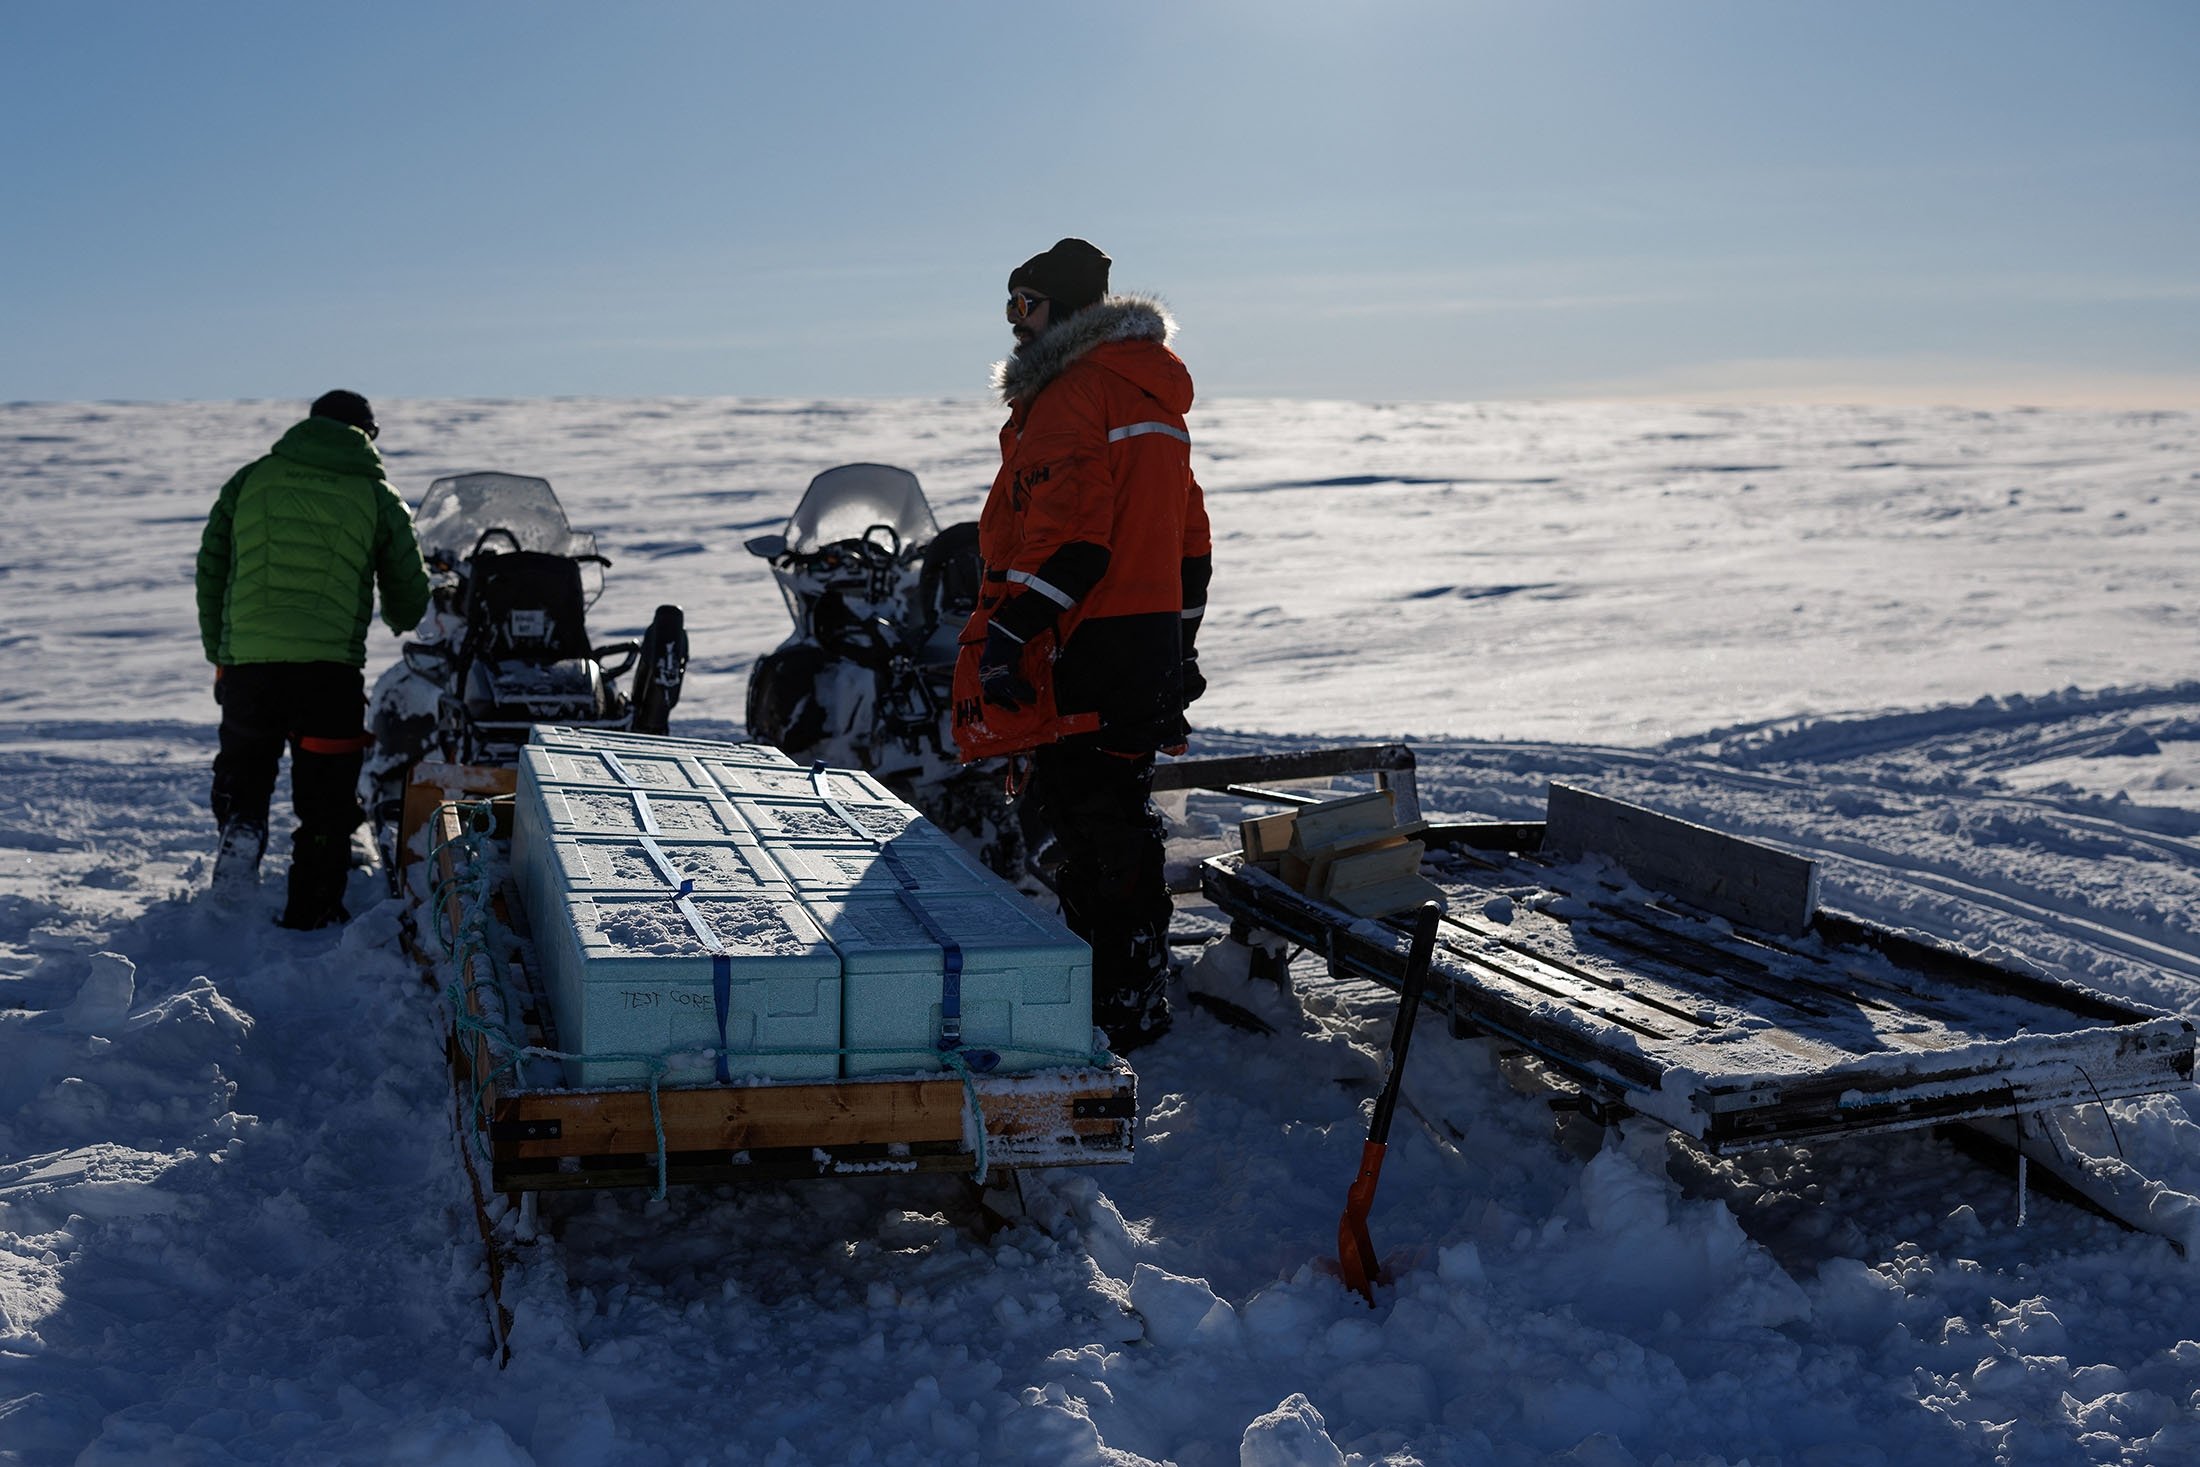 Ahli glasiologi Jean-Charles Gallet (kanan), 41, dan Federico Scoto mengendarai sepeda motor saat mereka menarik kereta luncur berisi kotak berisi inti es yang menunggu untuk dibawa kembali untuk disimpan ke Ny-Aalesund, Svalbard, Norwegia, 10 April 2023. (Reuters Photo )